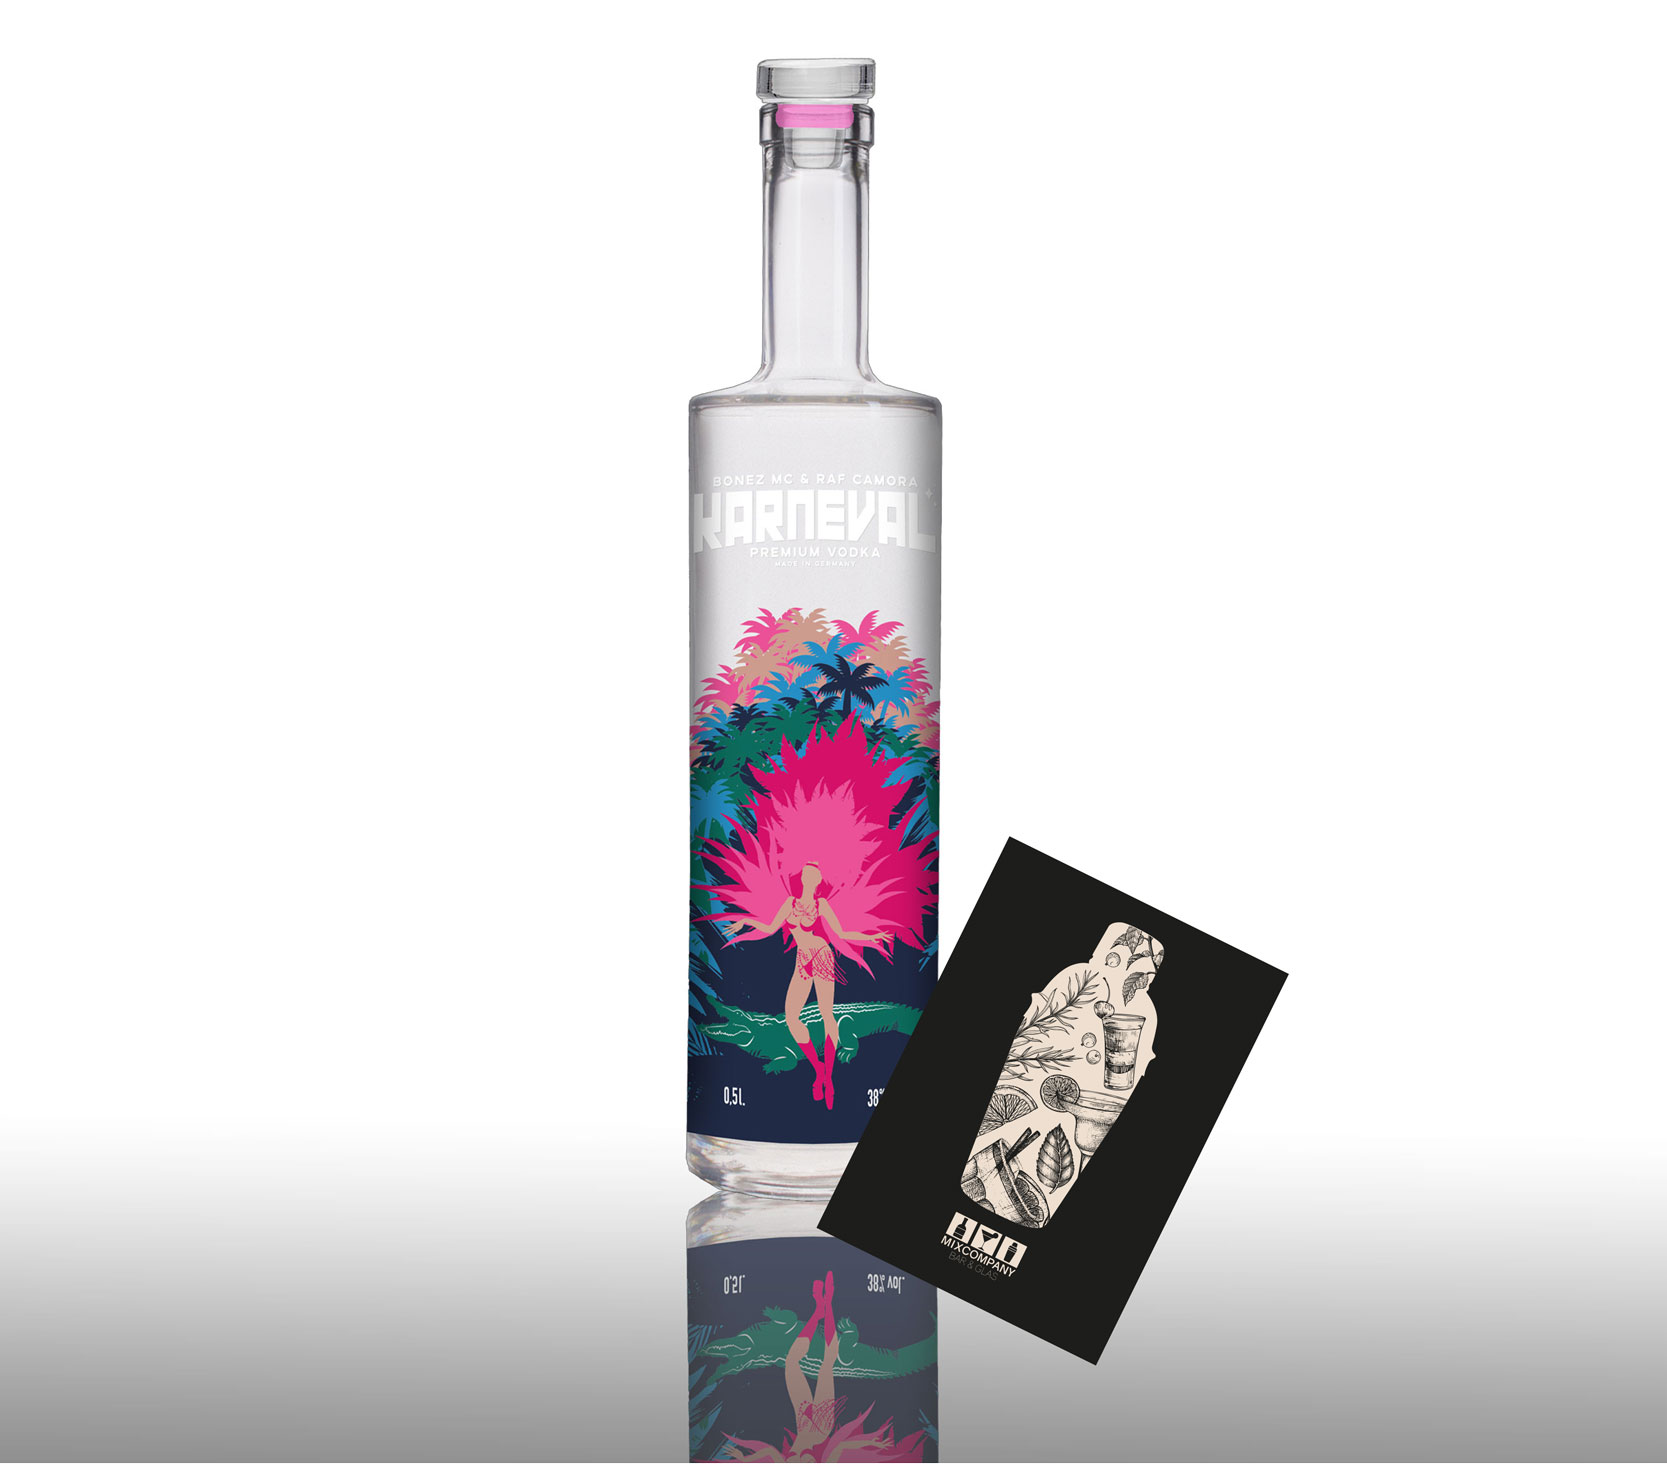 Karneval Vodka 0,5L (38% Vol) Premium Vodka von Raf Camora und Bonez Mc - [Enthält Sulfite]